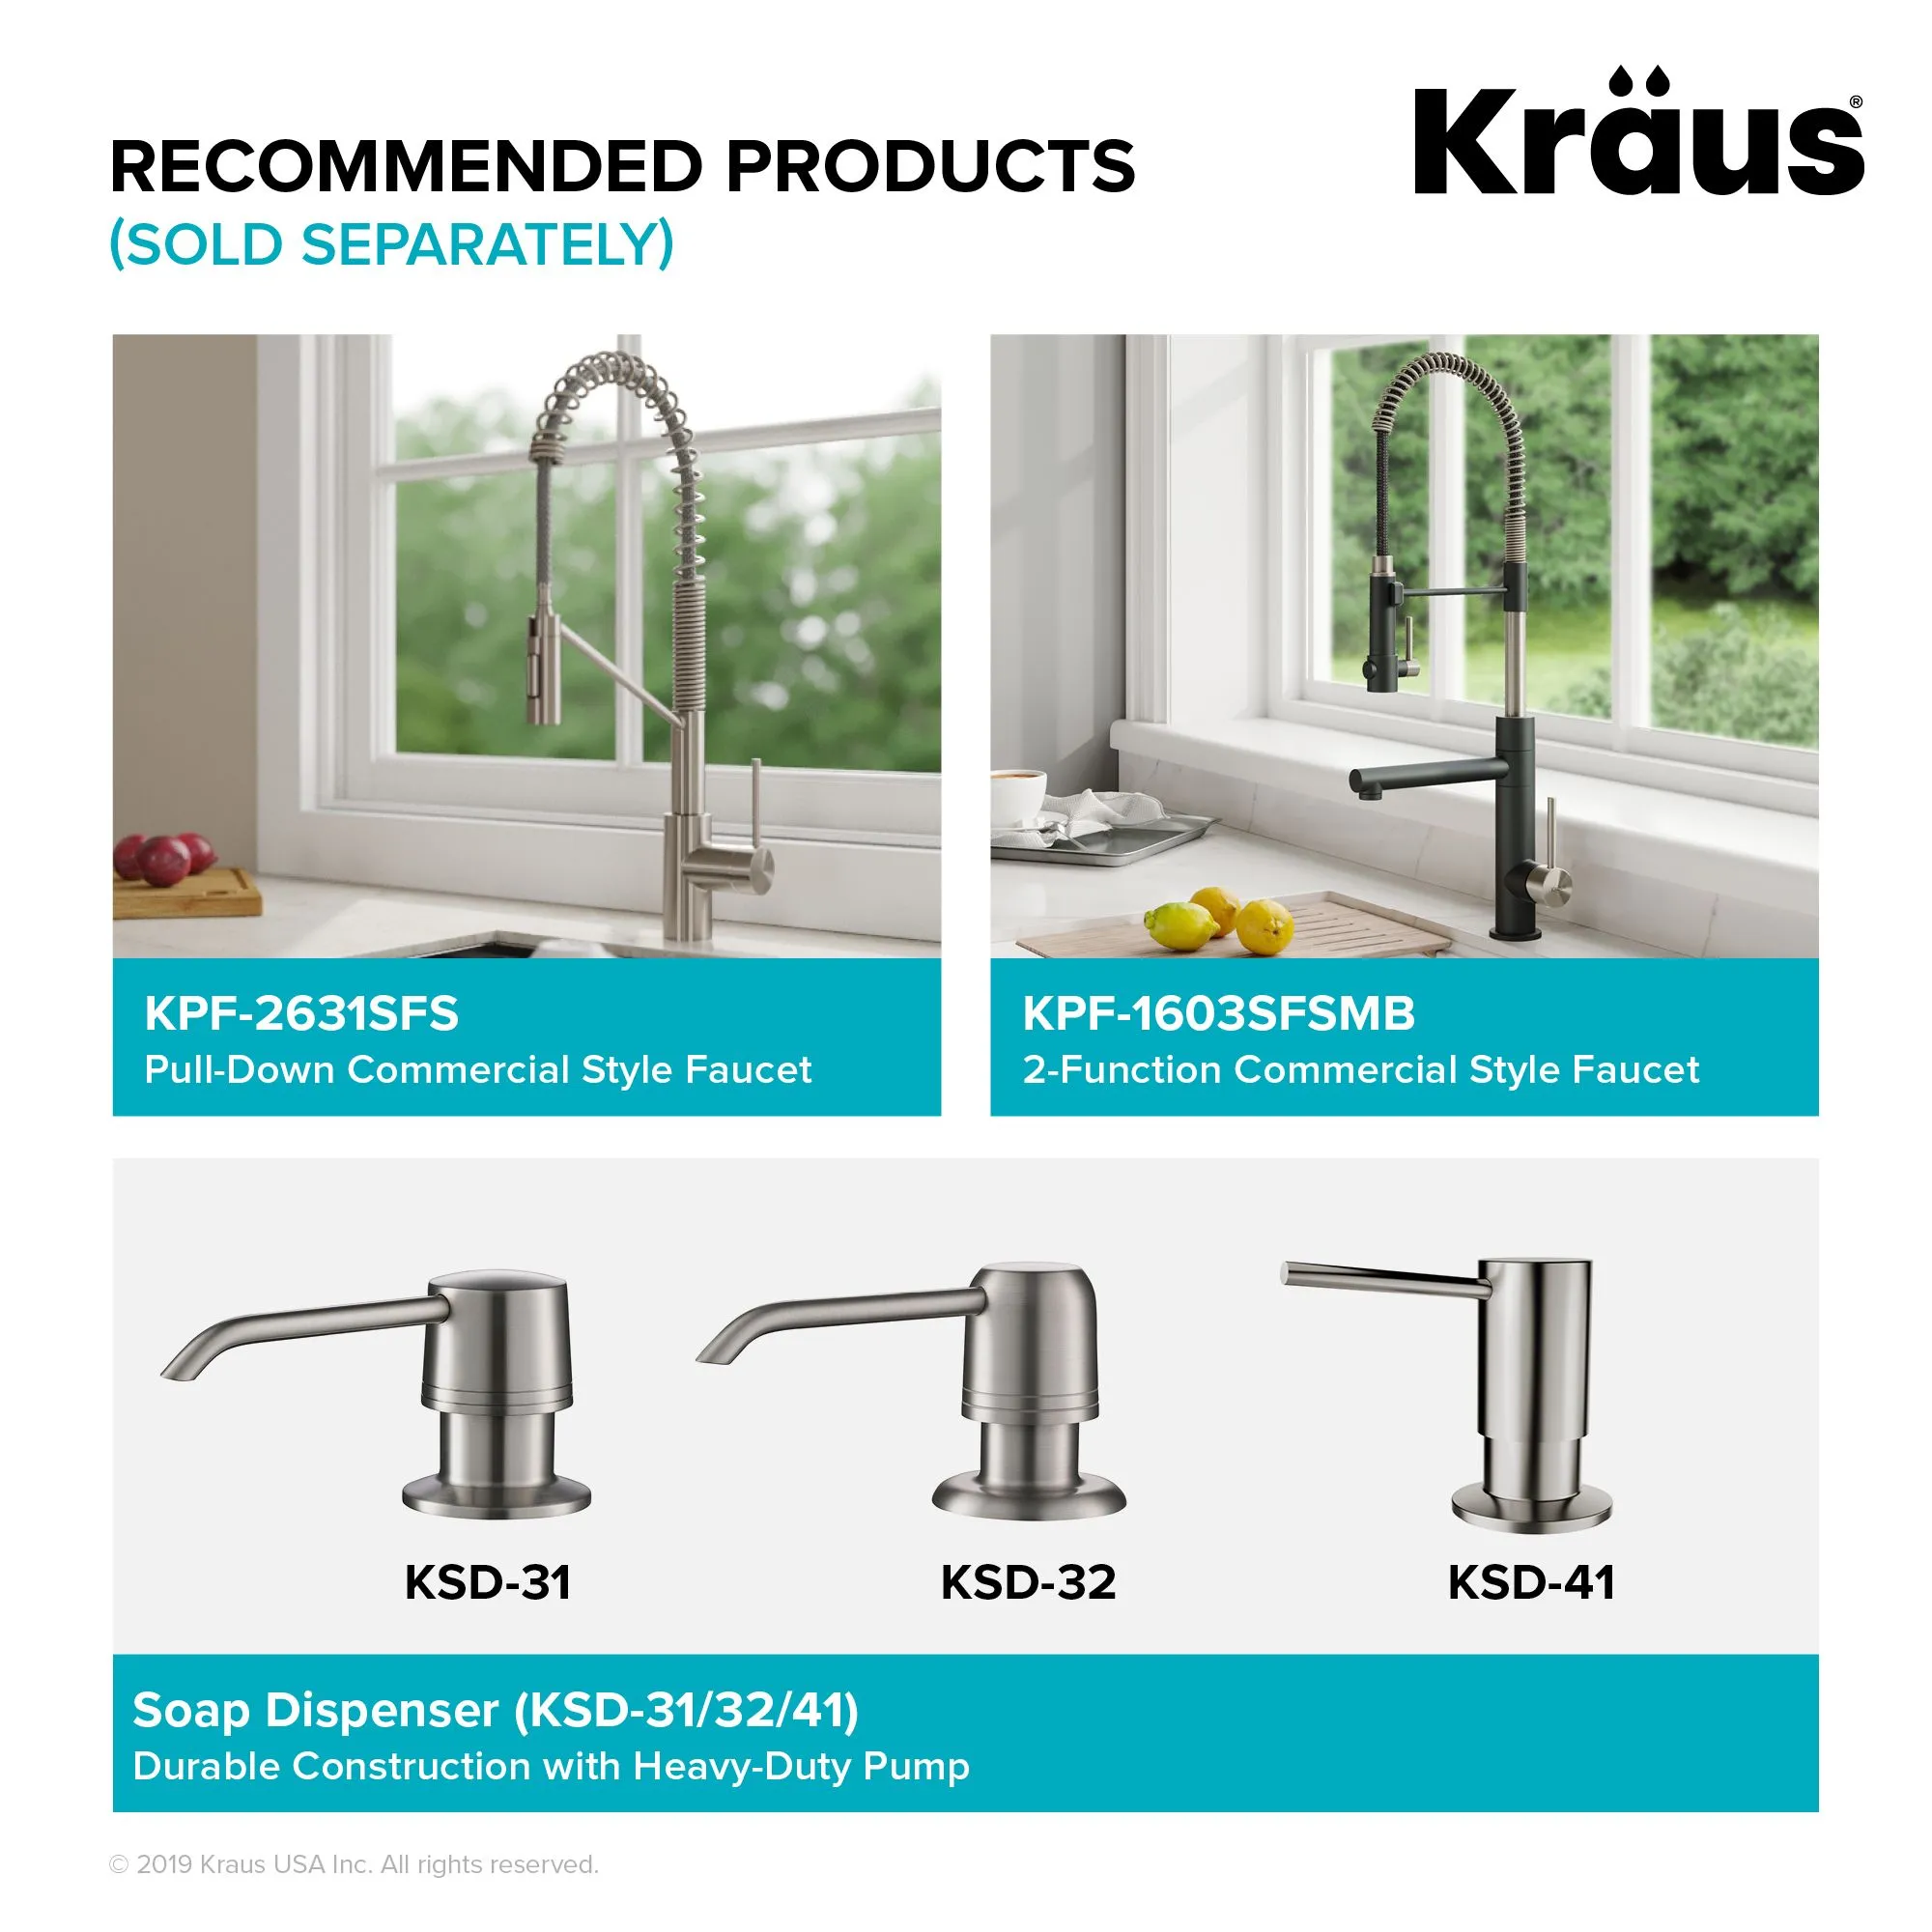 Kraus KWU12045 45 Inch Kore™ 2-Tier Workstation Kitchen Sink with